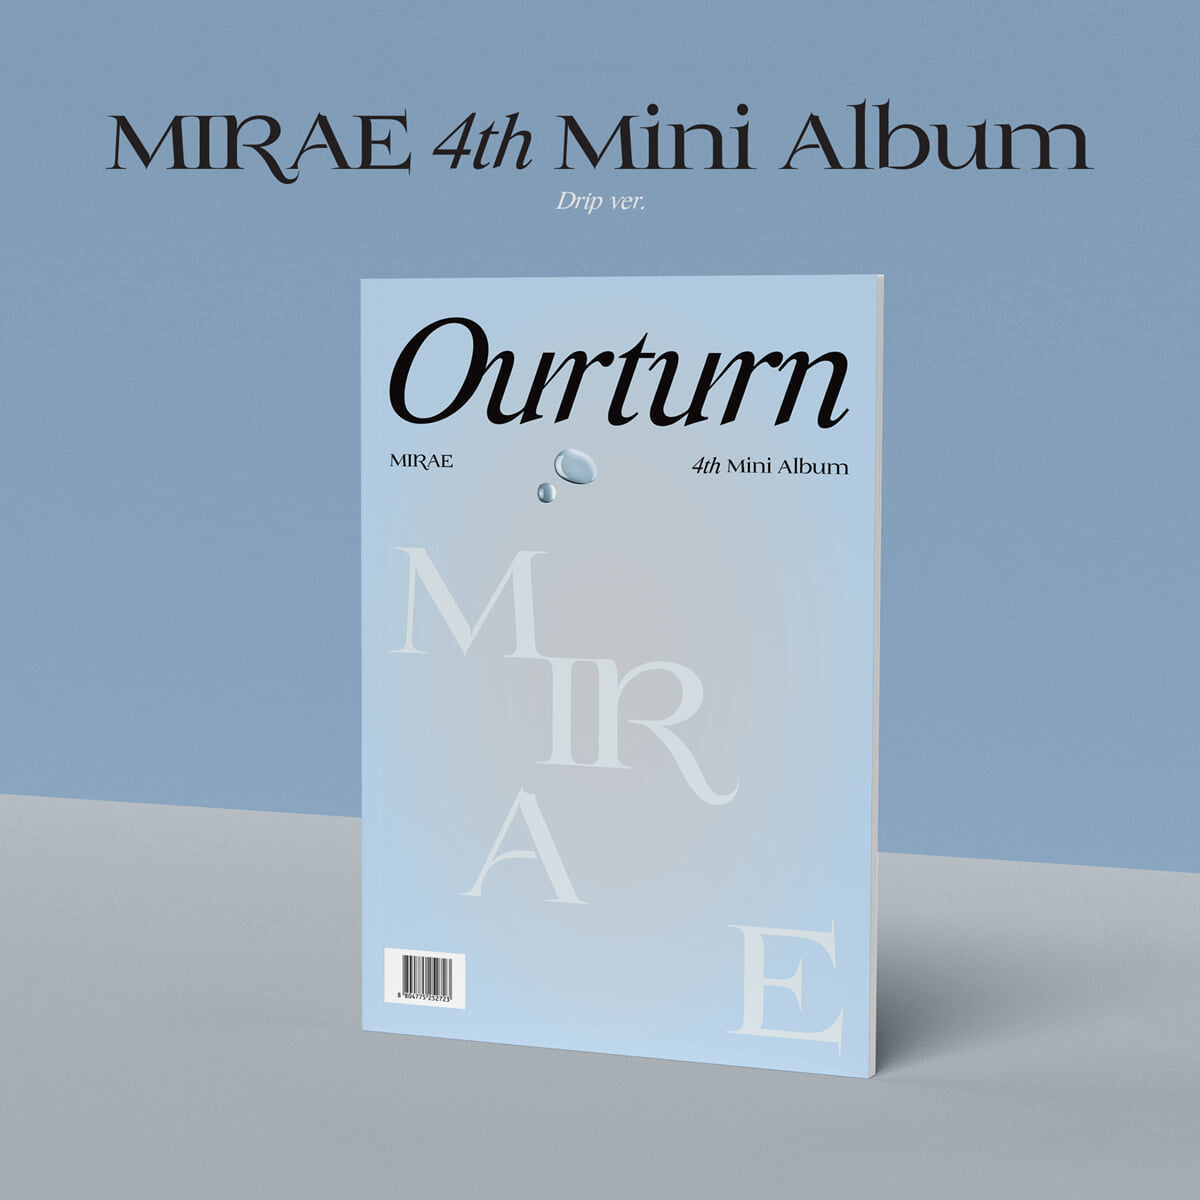 MIRAE 4th Mini Album : Ourturn